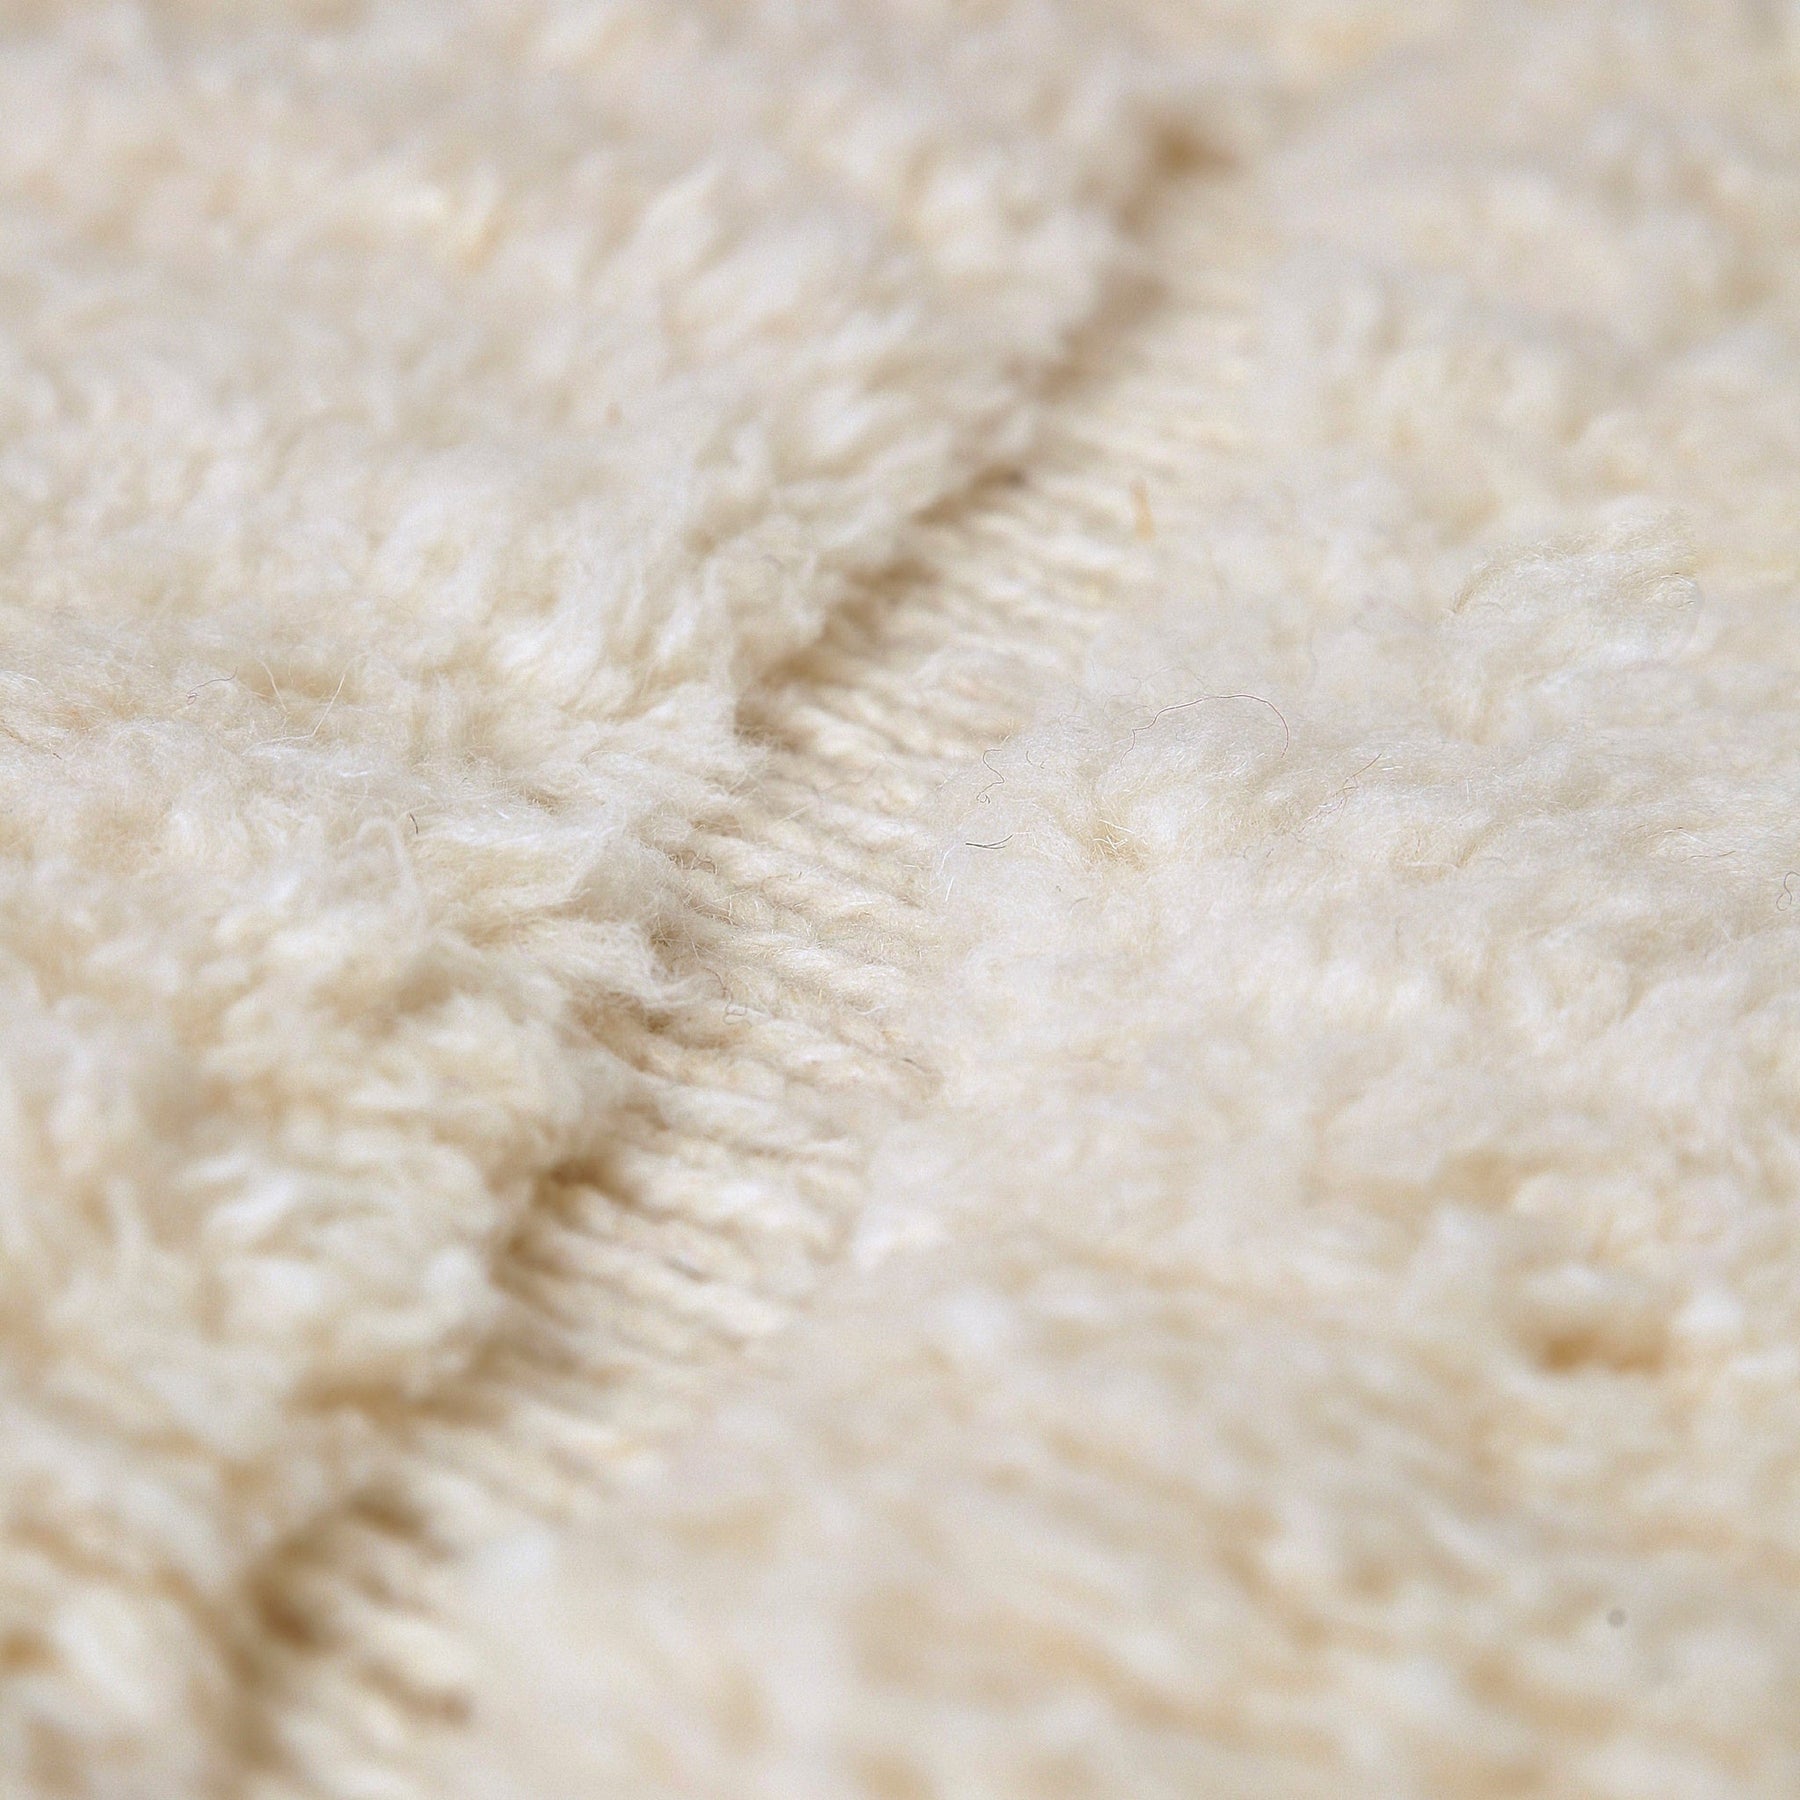 dettaglio ravicinato della lana bianca e dell'annodatura di un tappeto beni mrirt